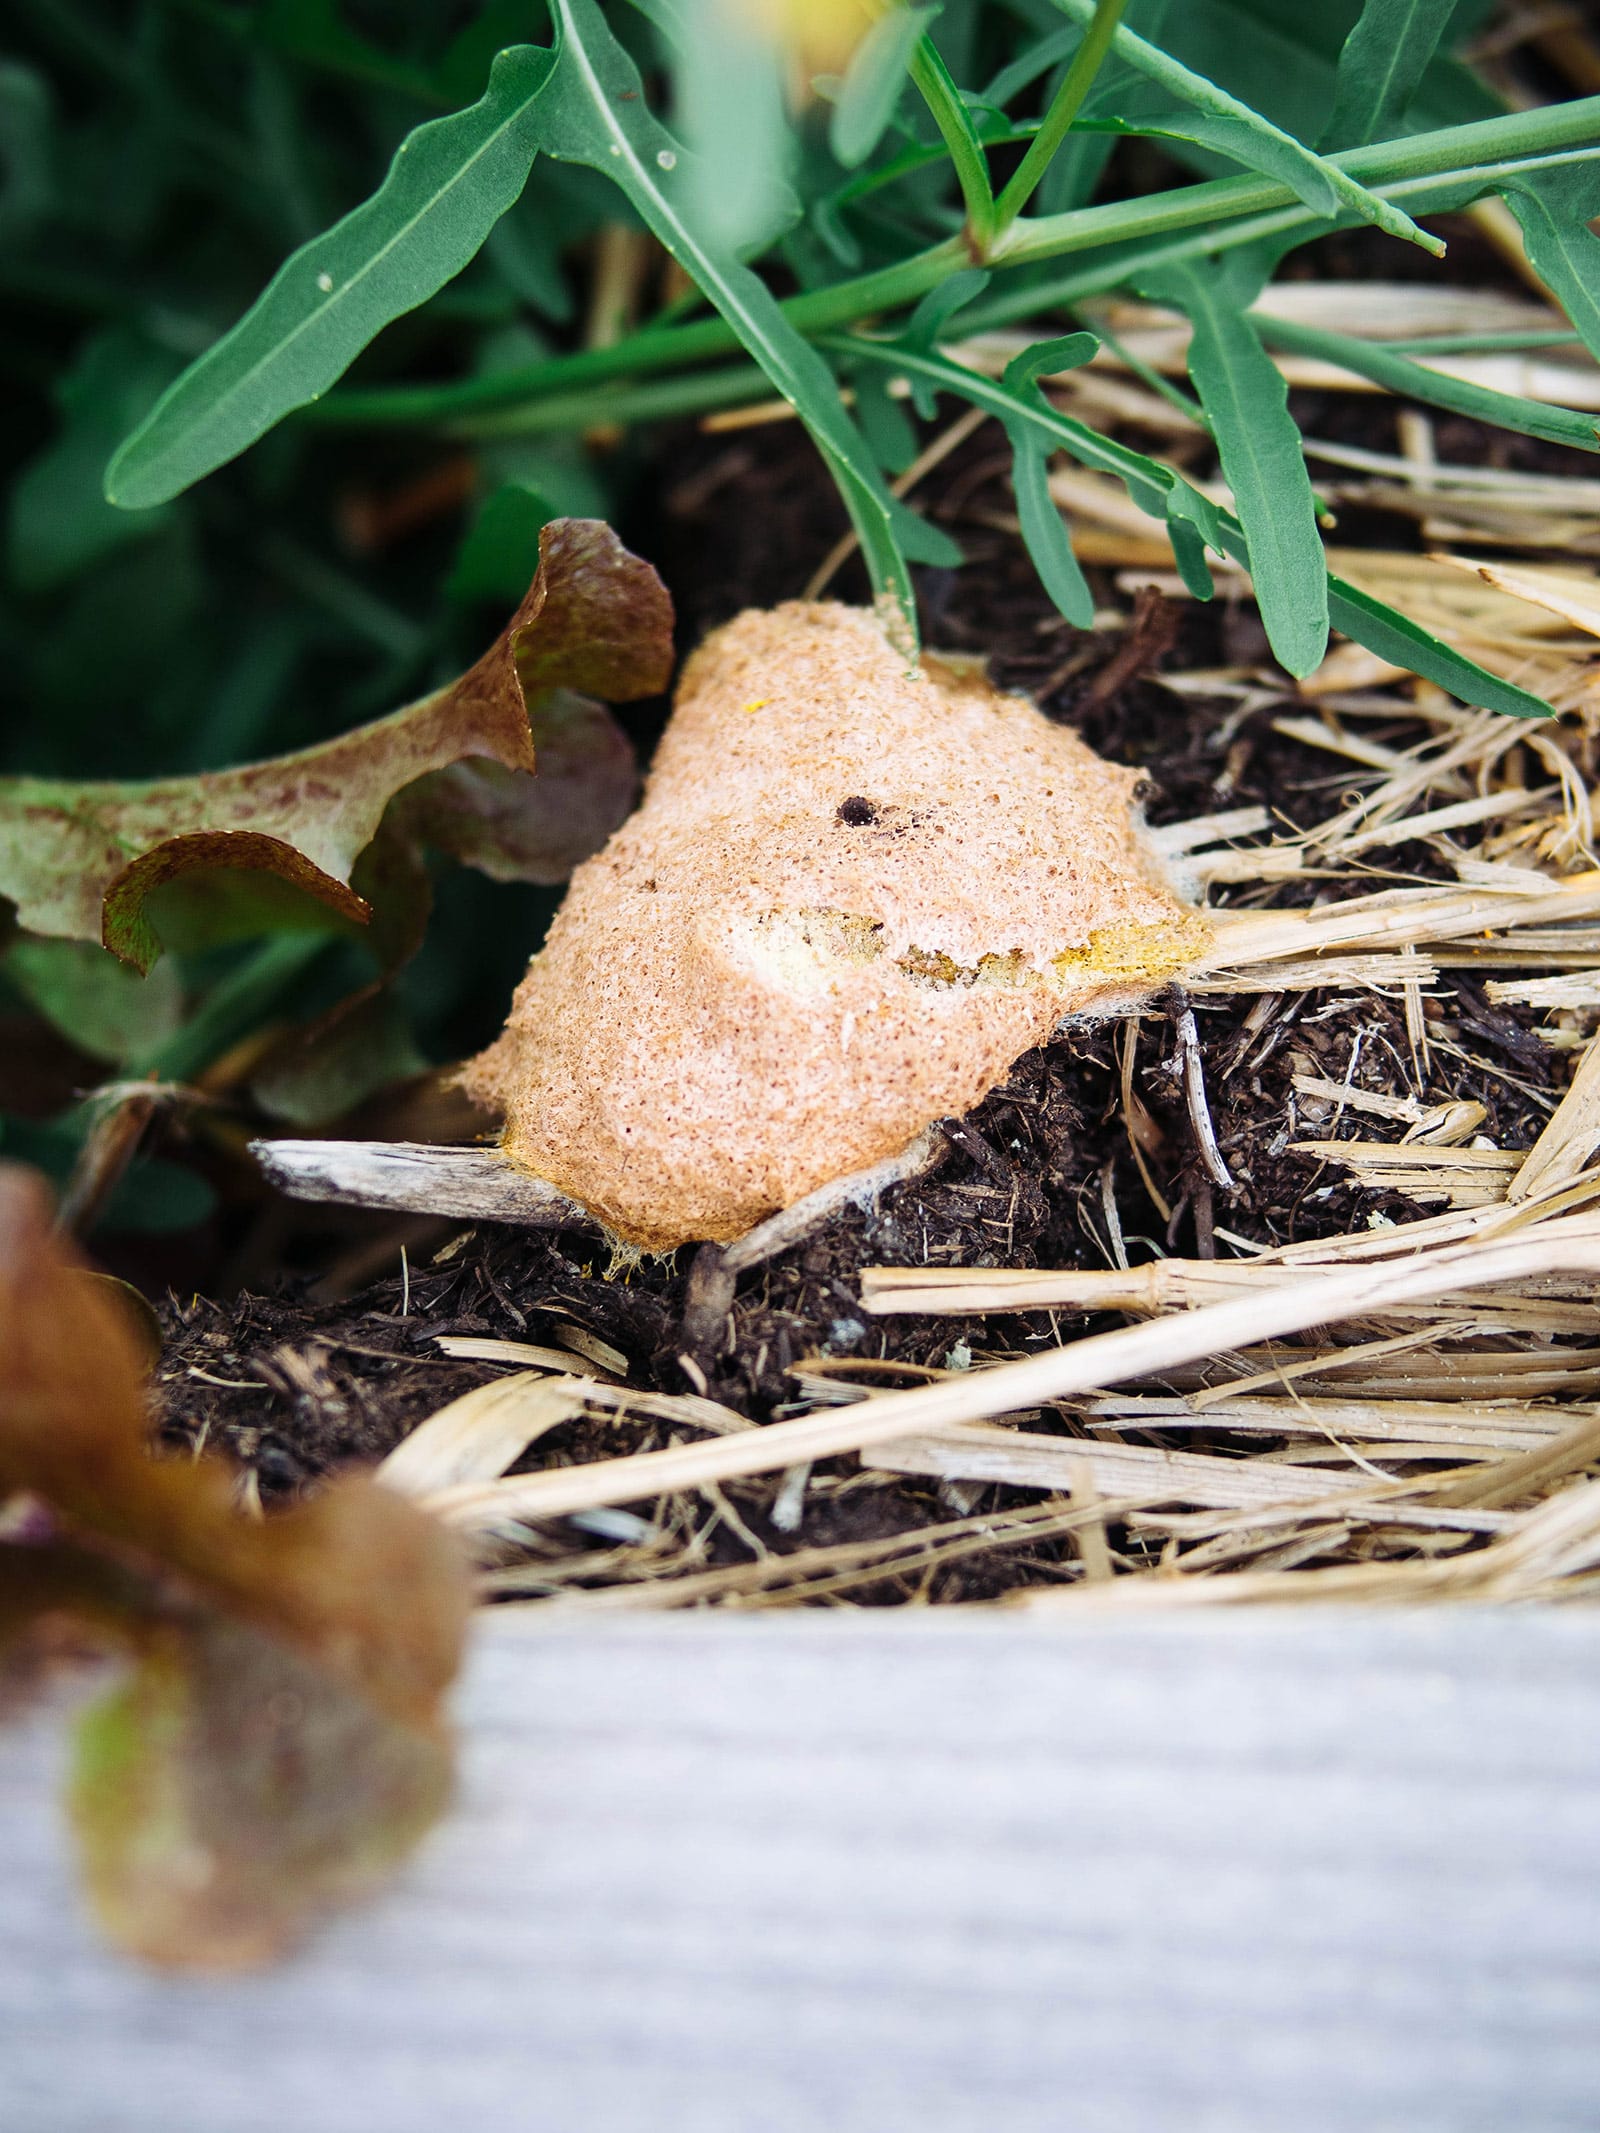 Dog vomit fungus (Fuligo septicai) growing in straw mulch next to arugula plants